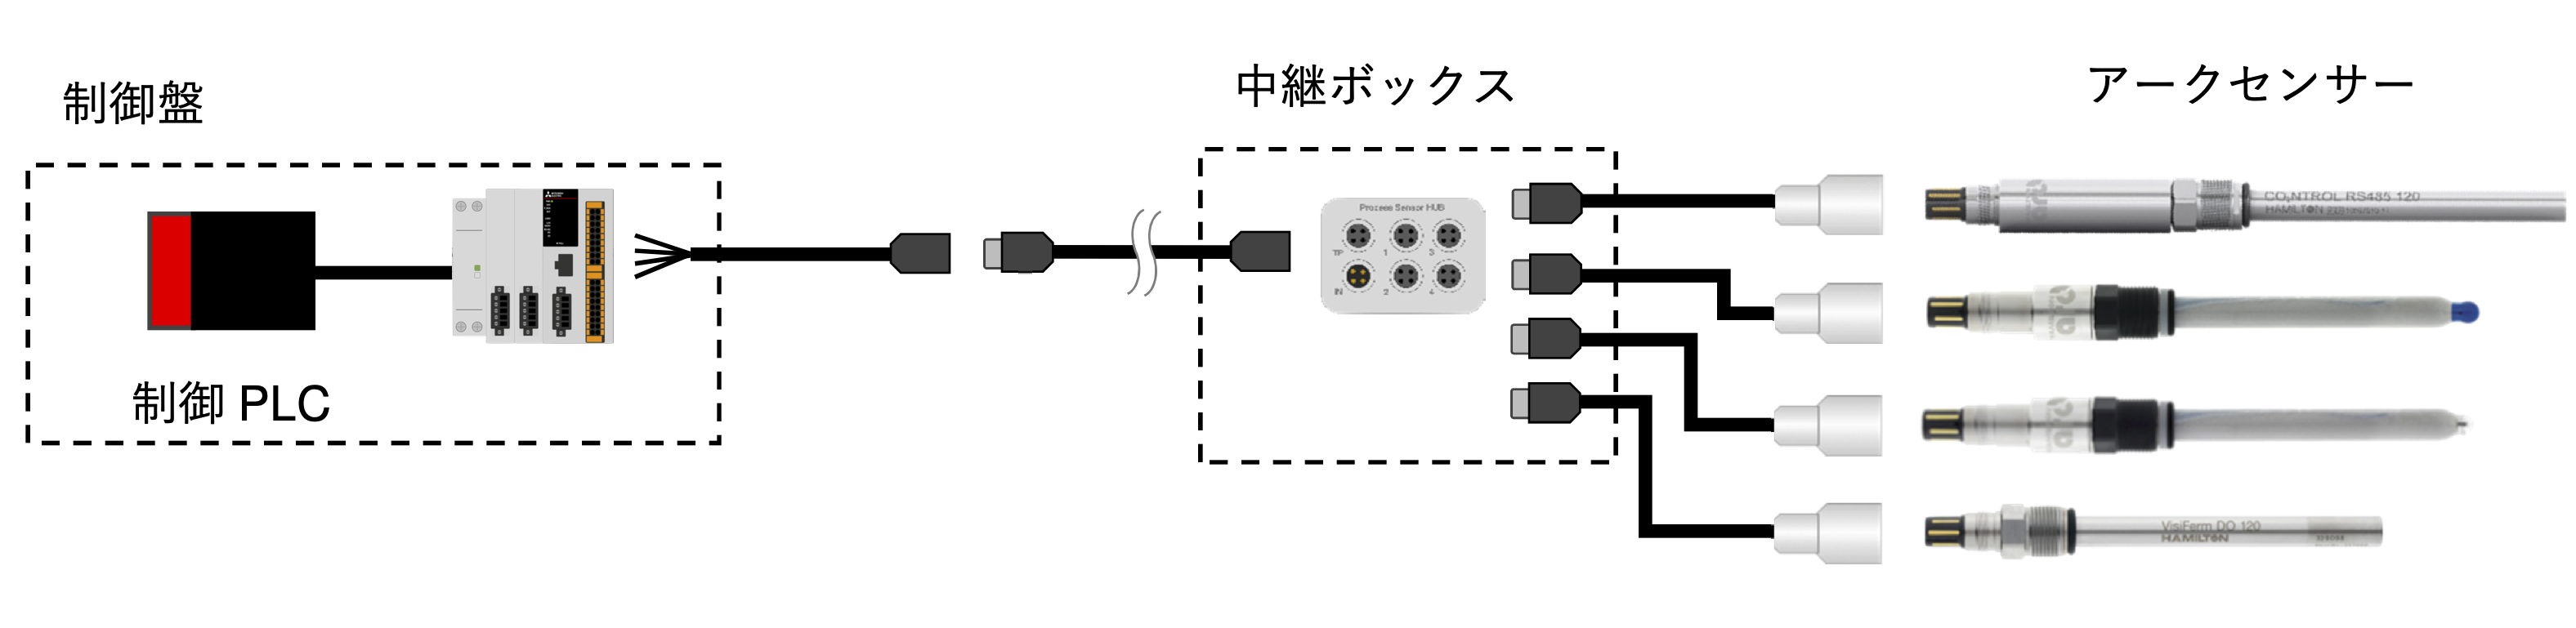 プロセスセンサーハブ マルチ接続での省配線化 | Hamilton Process Sensor HUB Connection Overview Multi